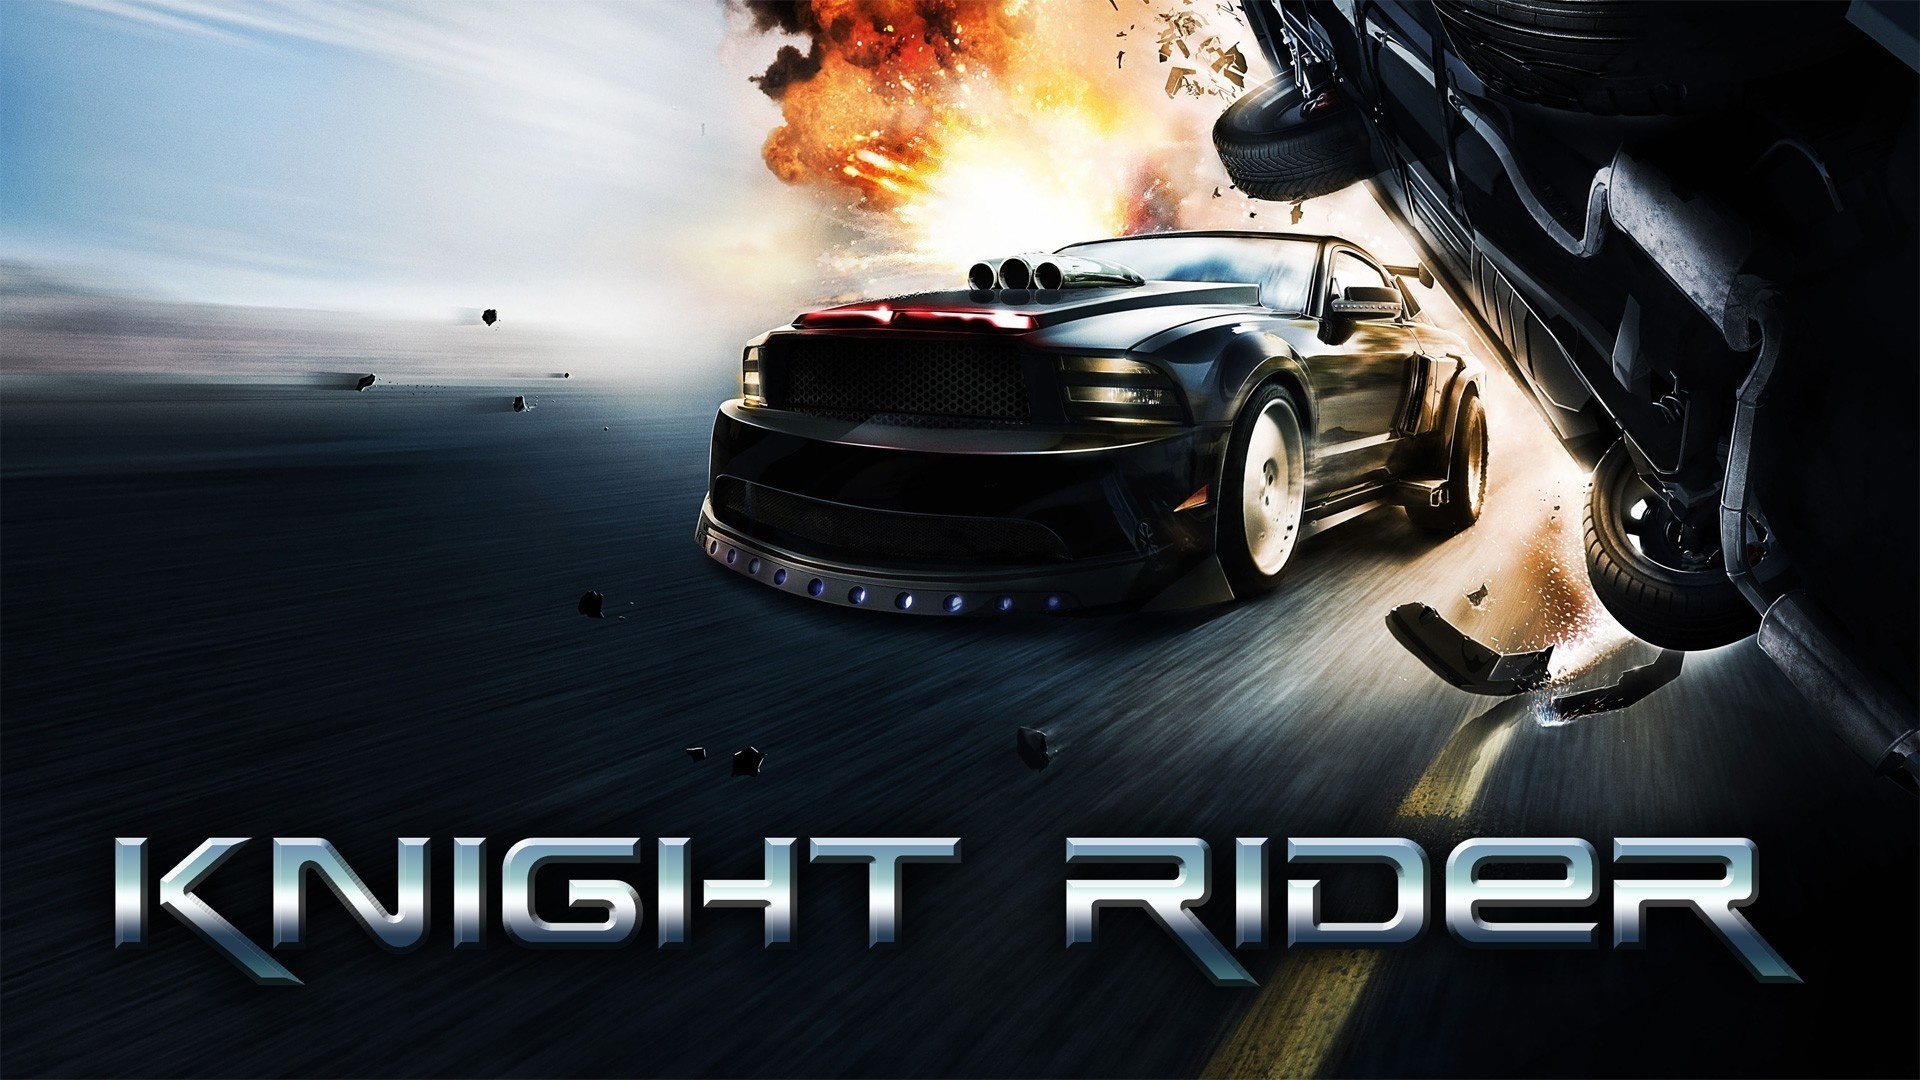 Knight Rider TV series, Night rider wallpaper, Free, 1920x1080 Full HD Desktop